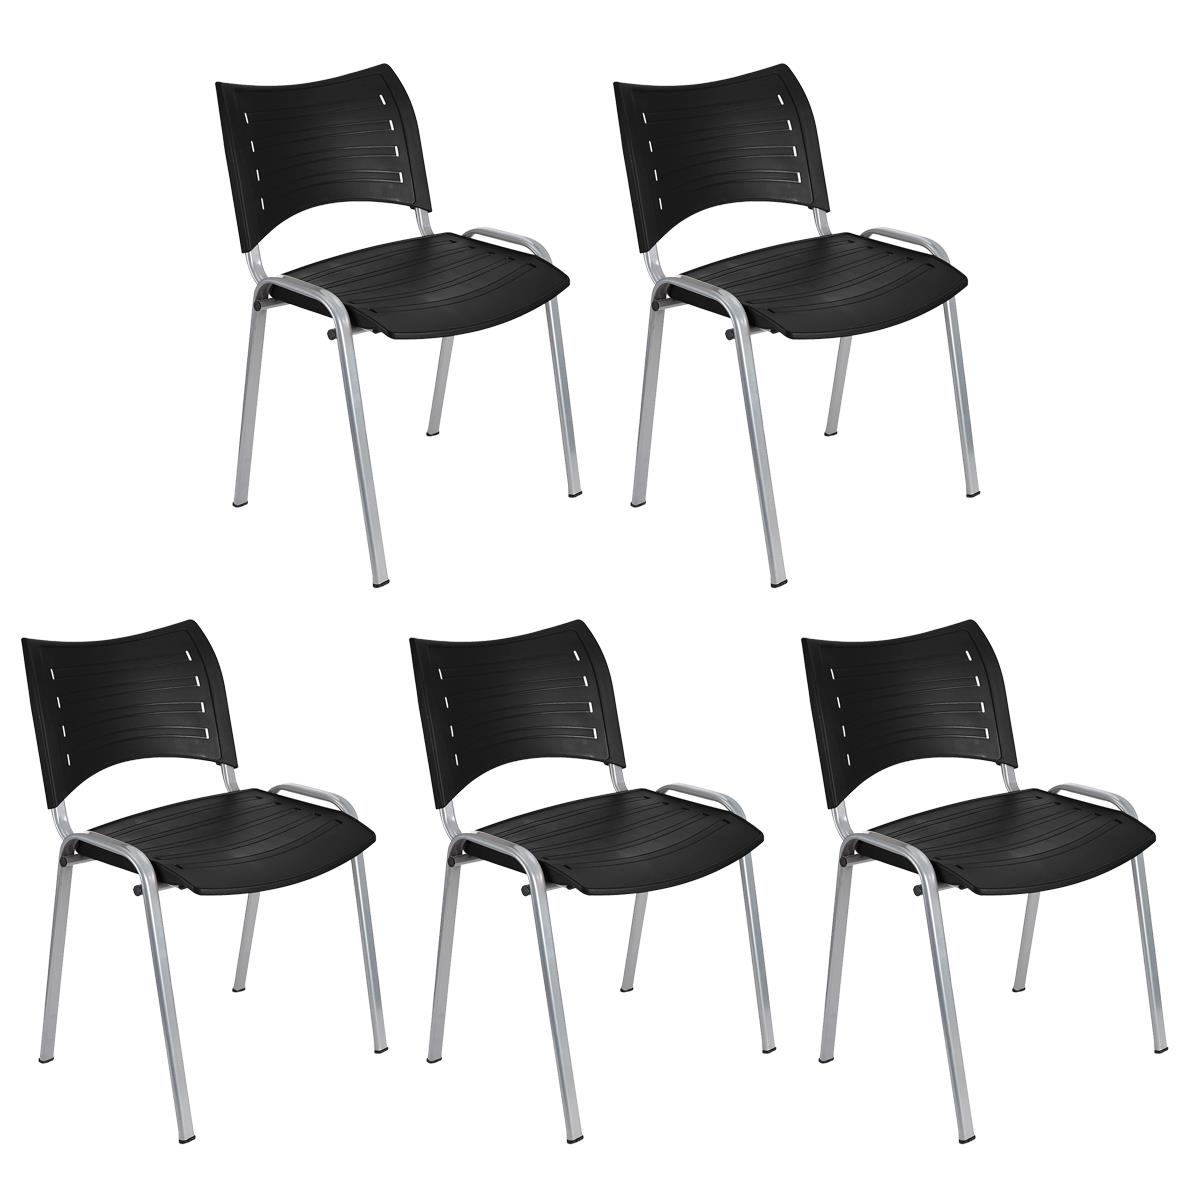 Lote 5 Cadeiras de Visita ELVA, Confortável e Prática, Pernas Cinza, Cor Preto